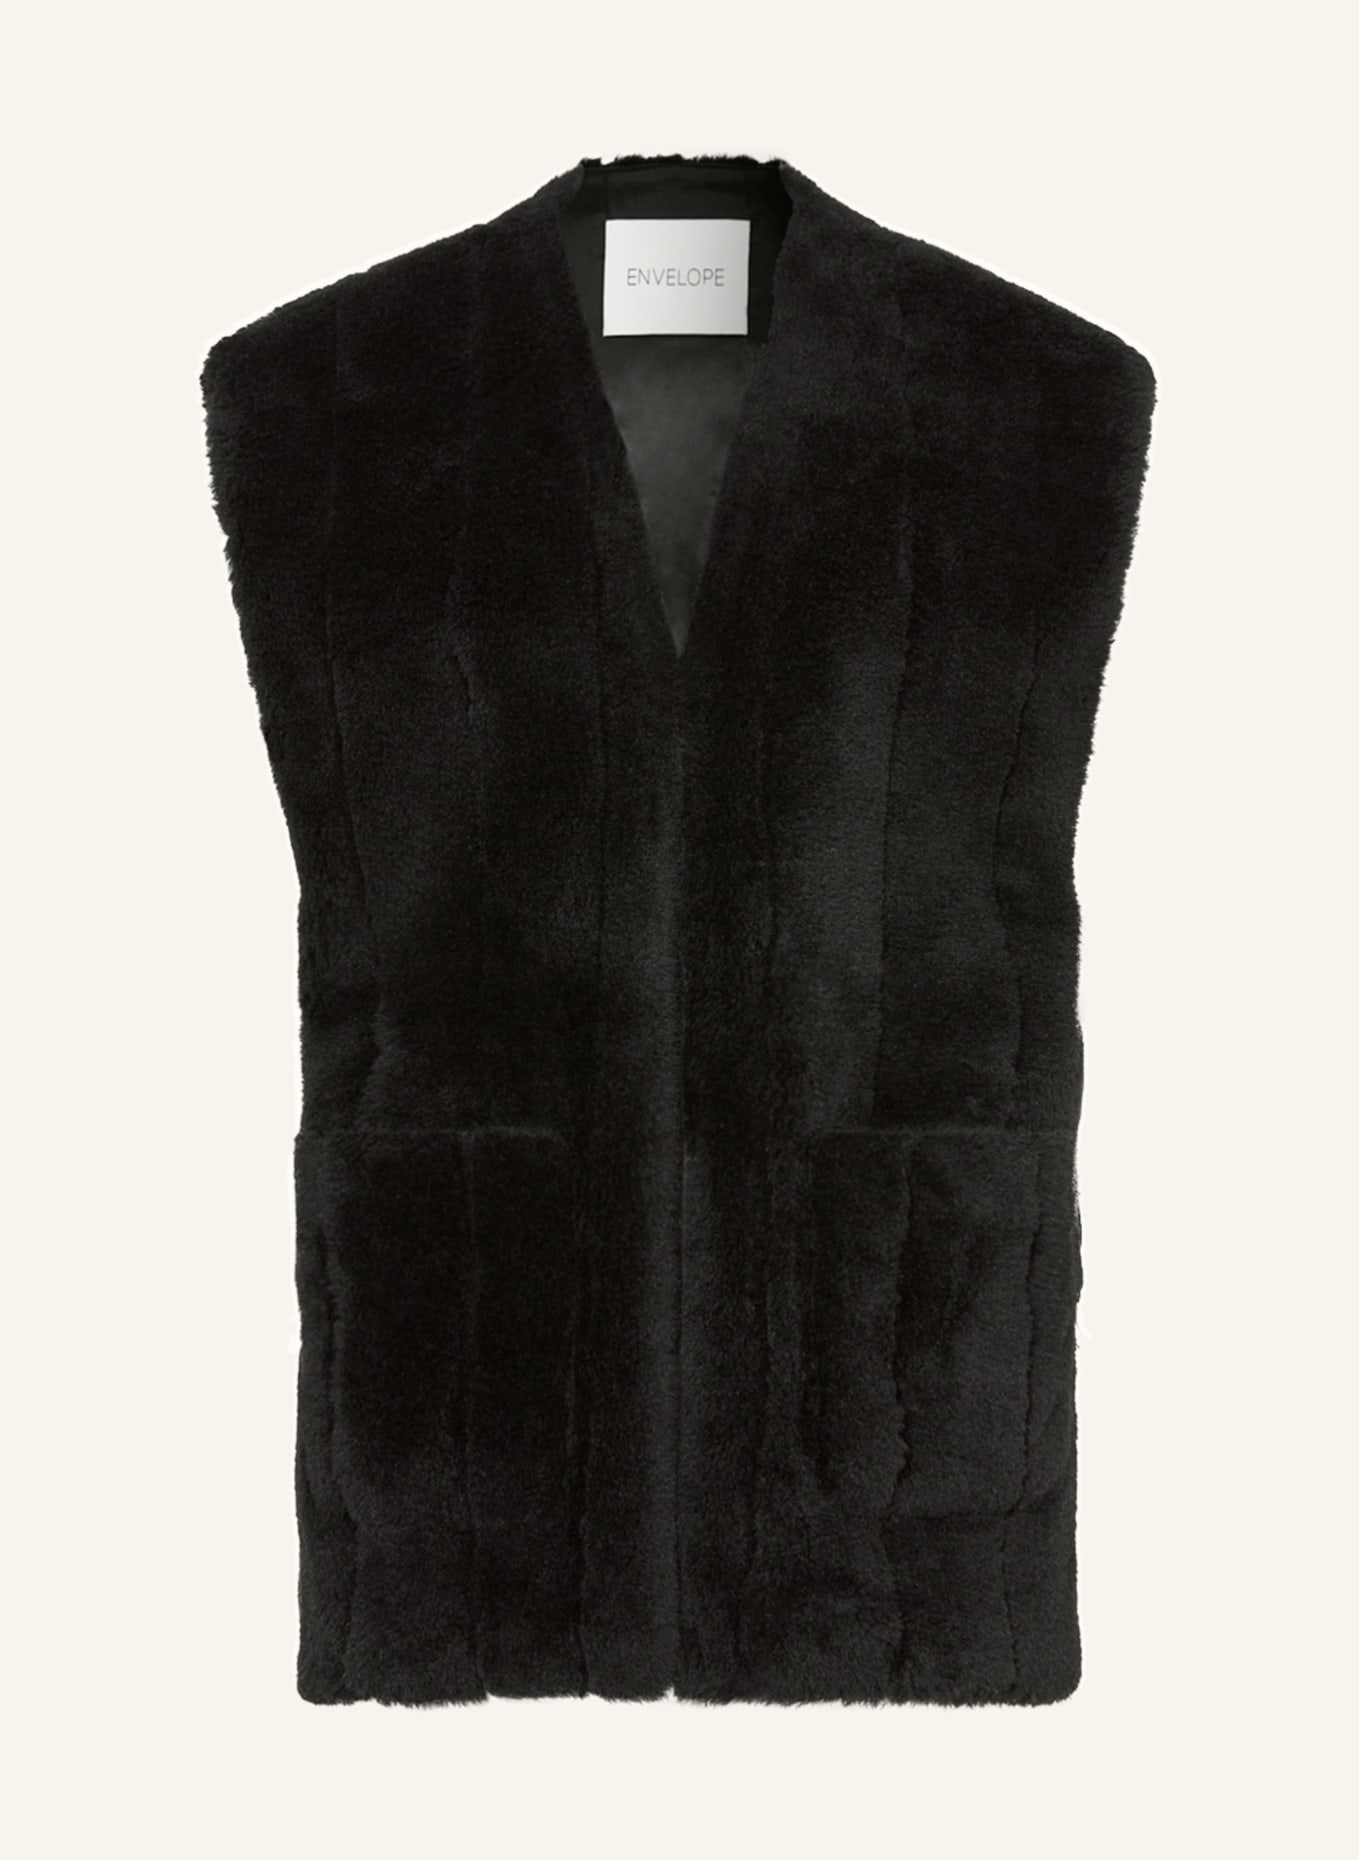 ENVELOPE 1976 Vest TINN made of faux fur, Color: BLACK (Image 1)